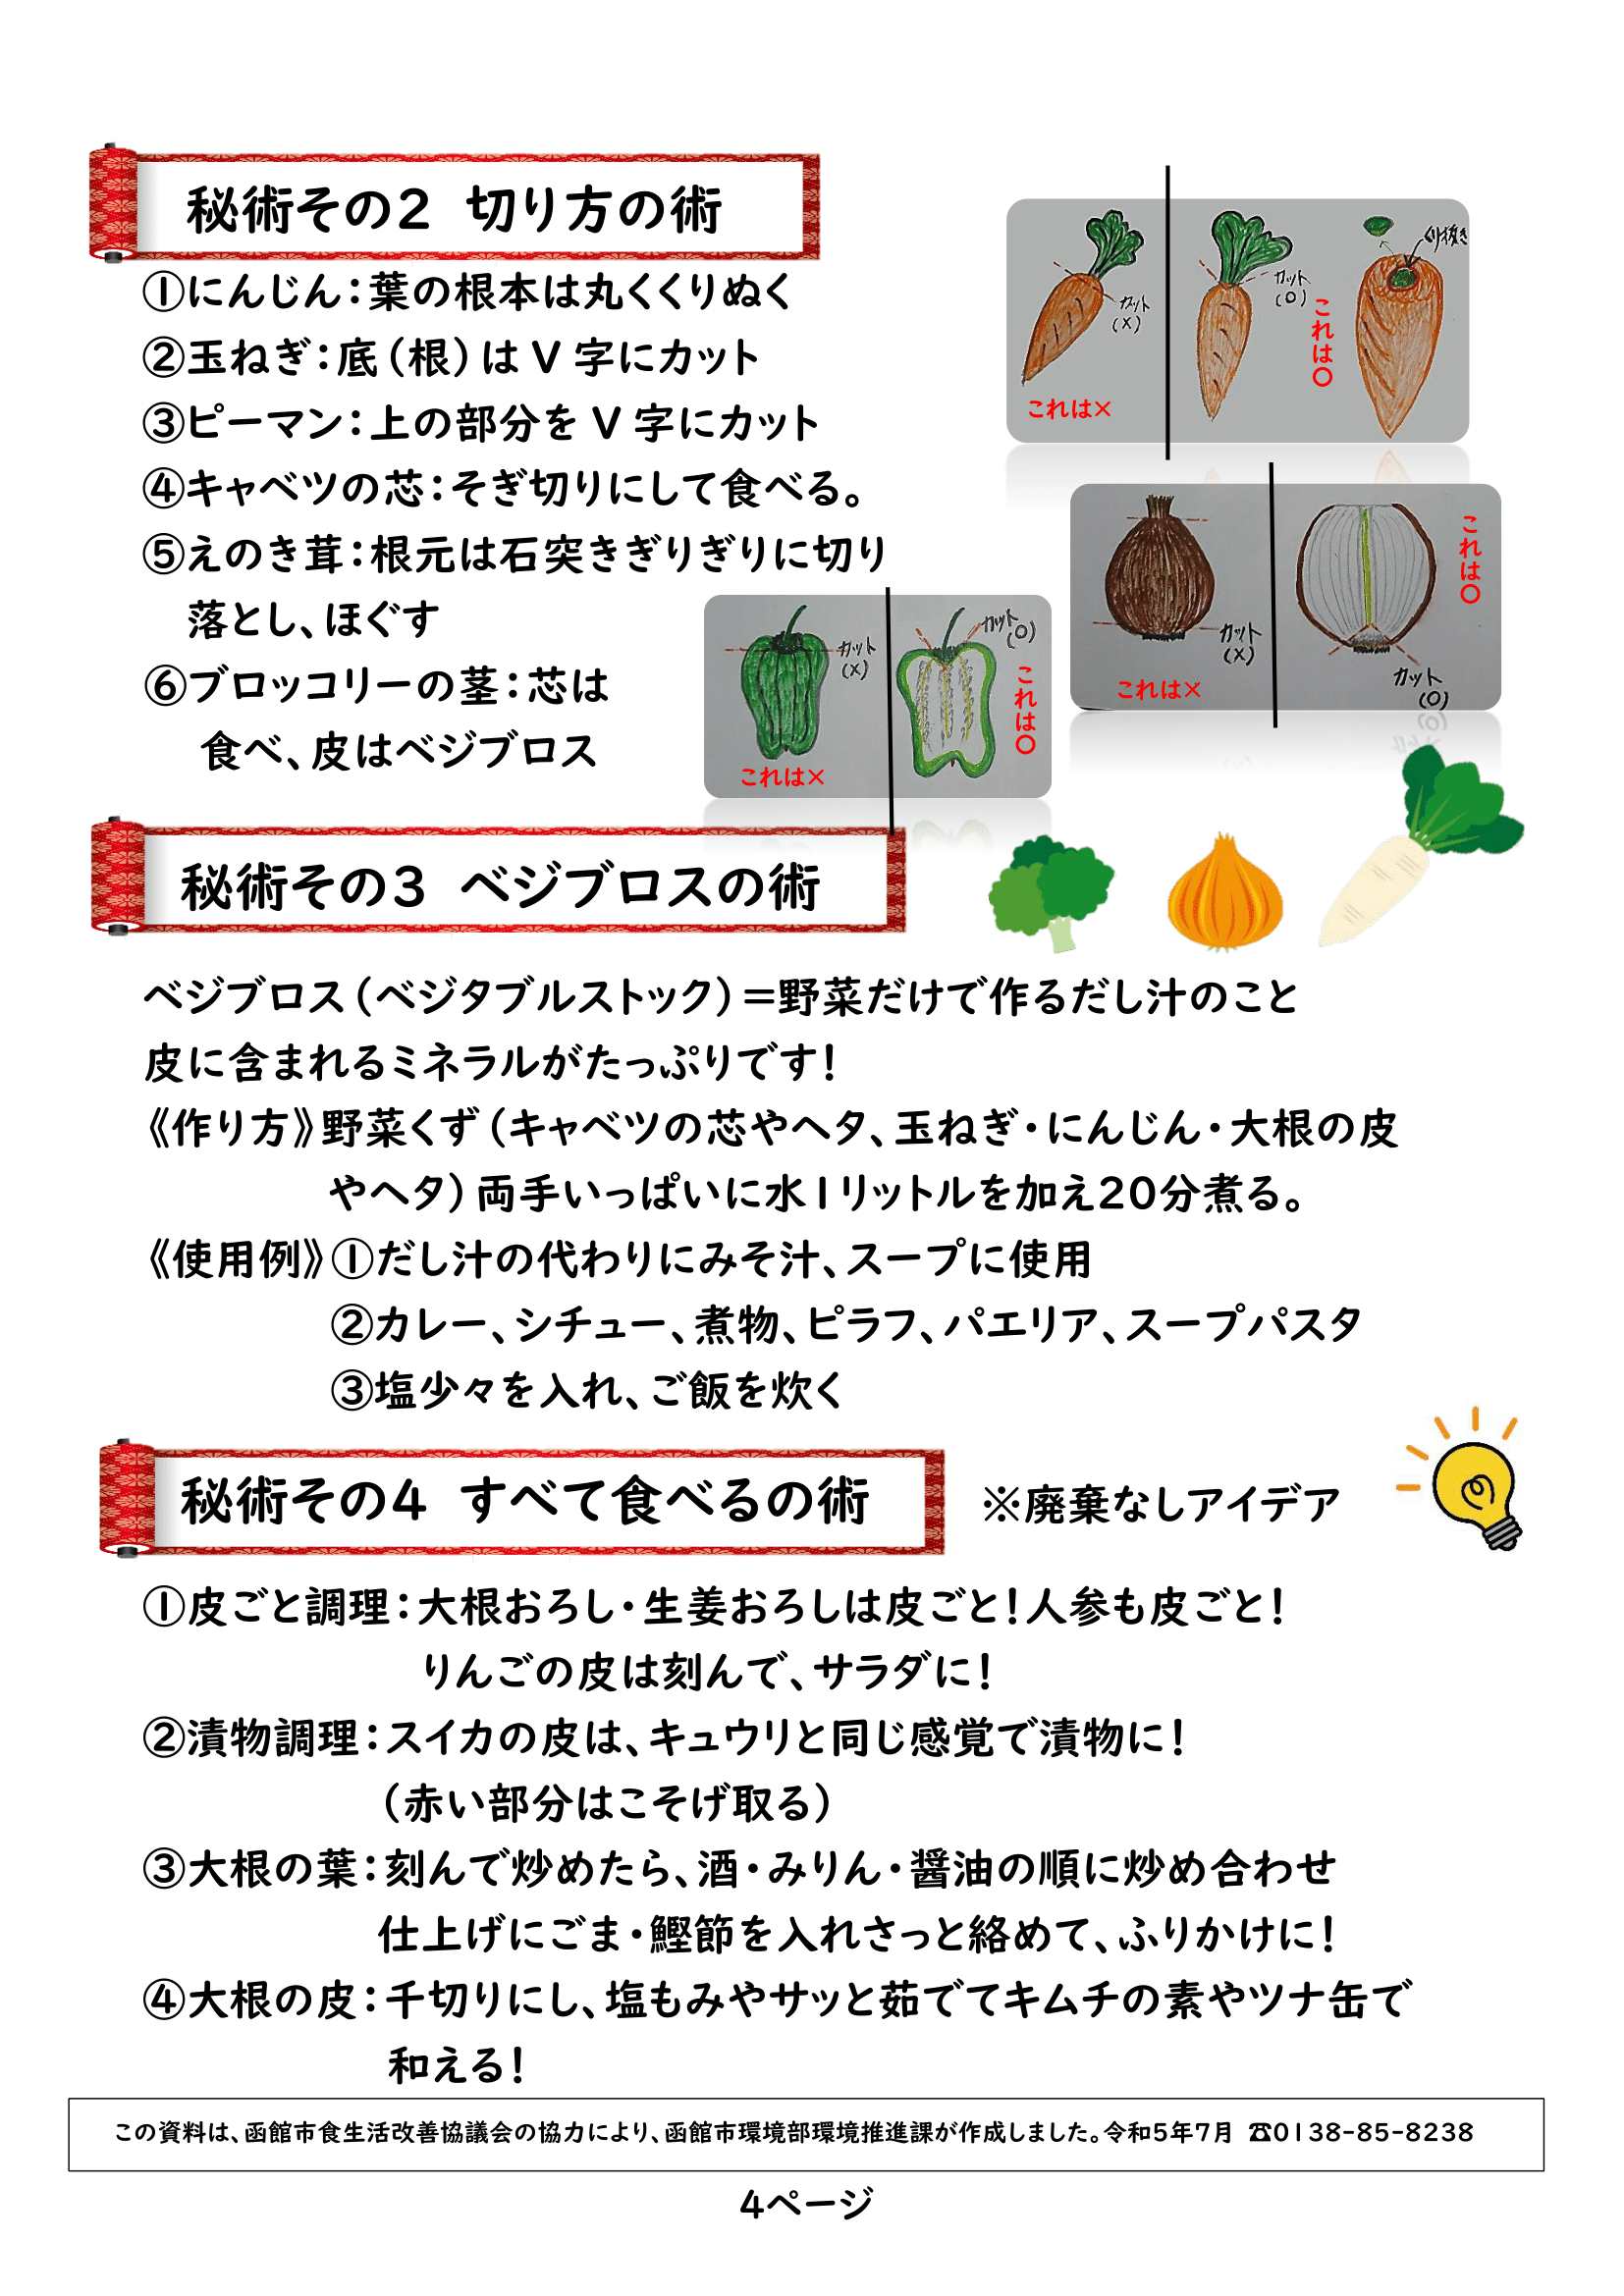 ヘルスメイト秘術レシピ-04.png